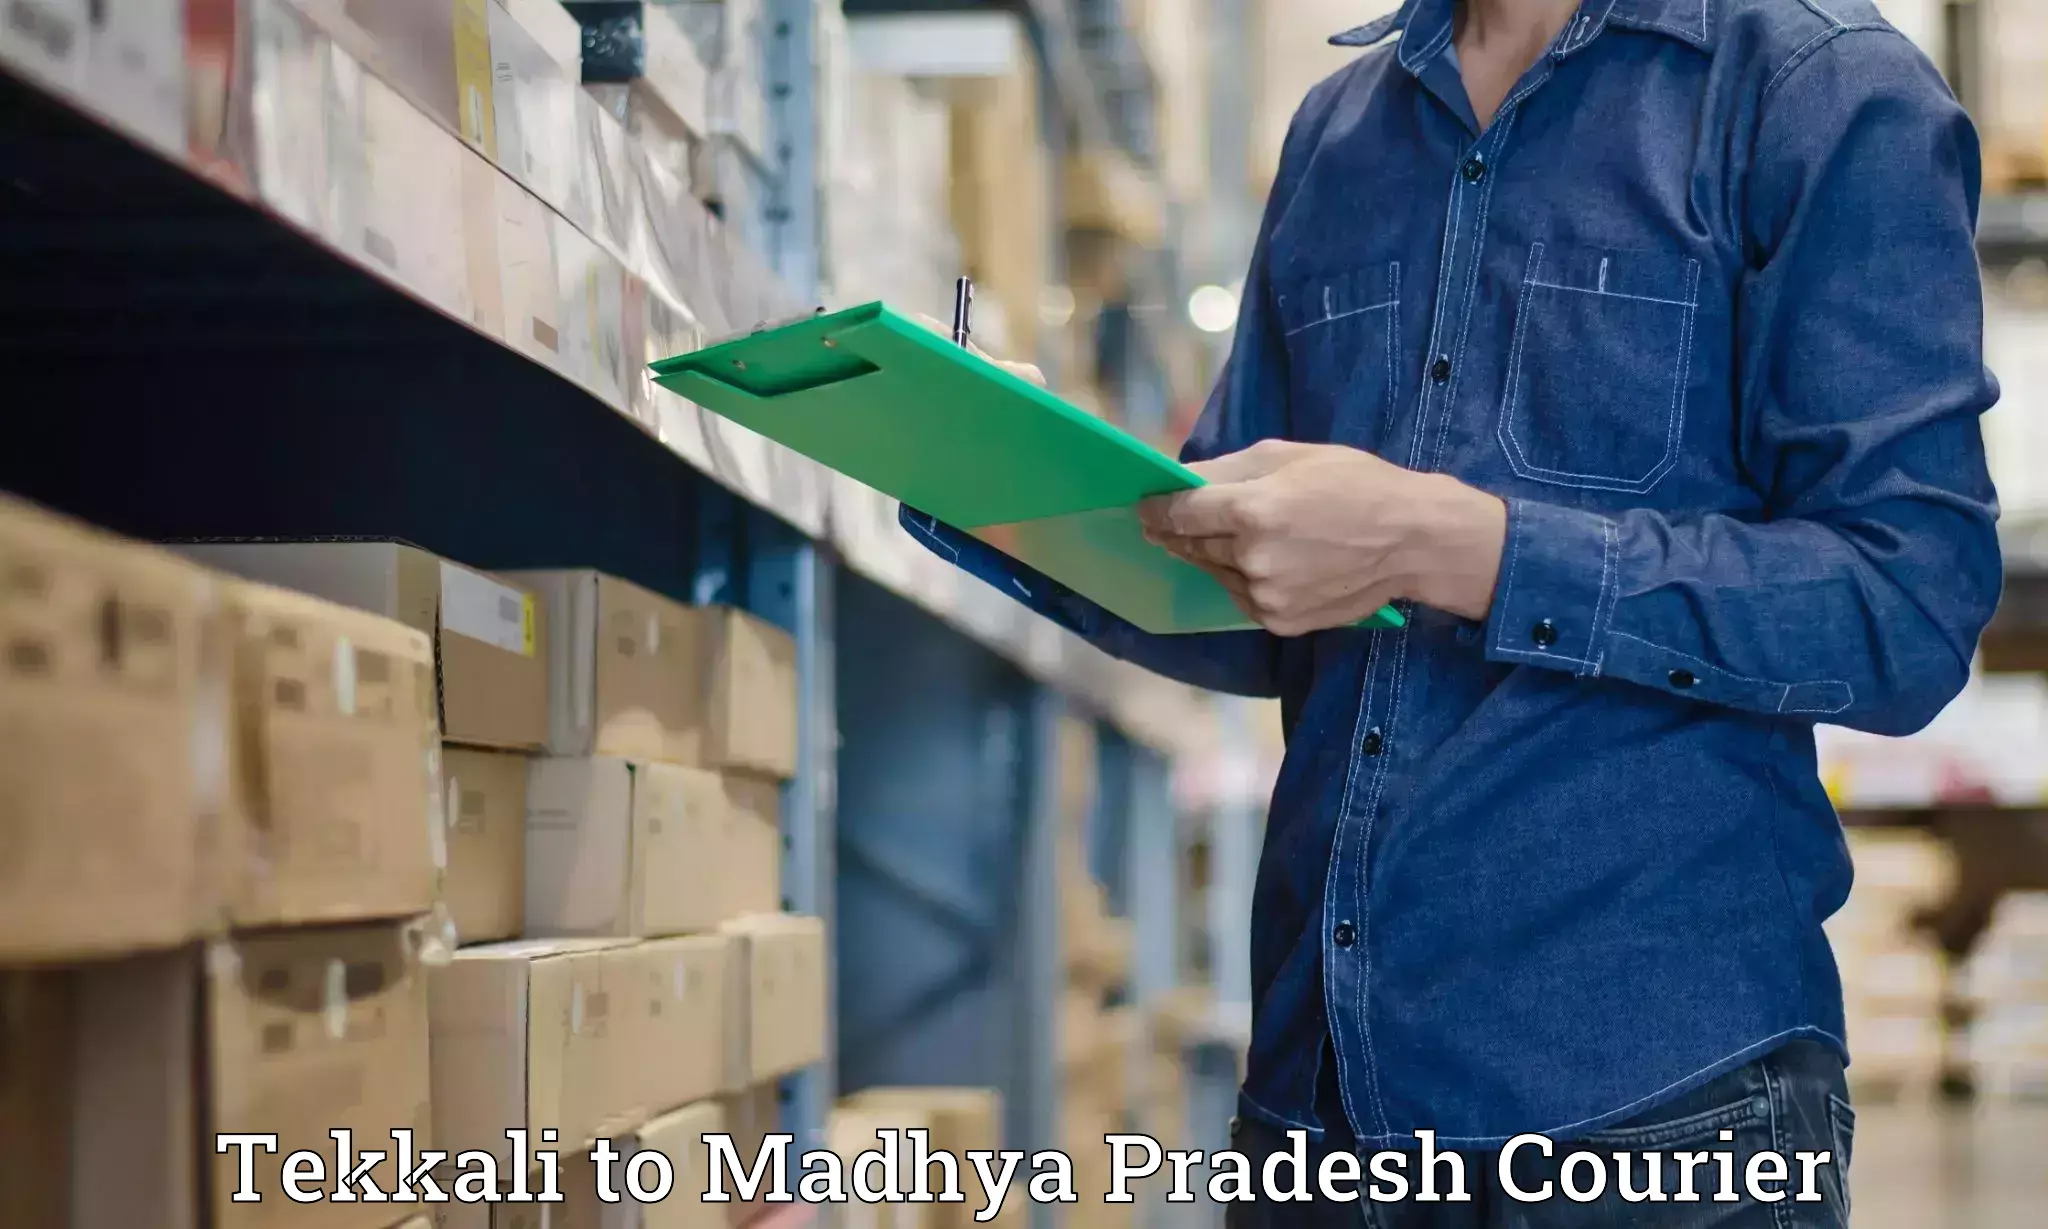 Baggage shipping schedule Tekkali to Madhya Pradesh